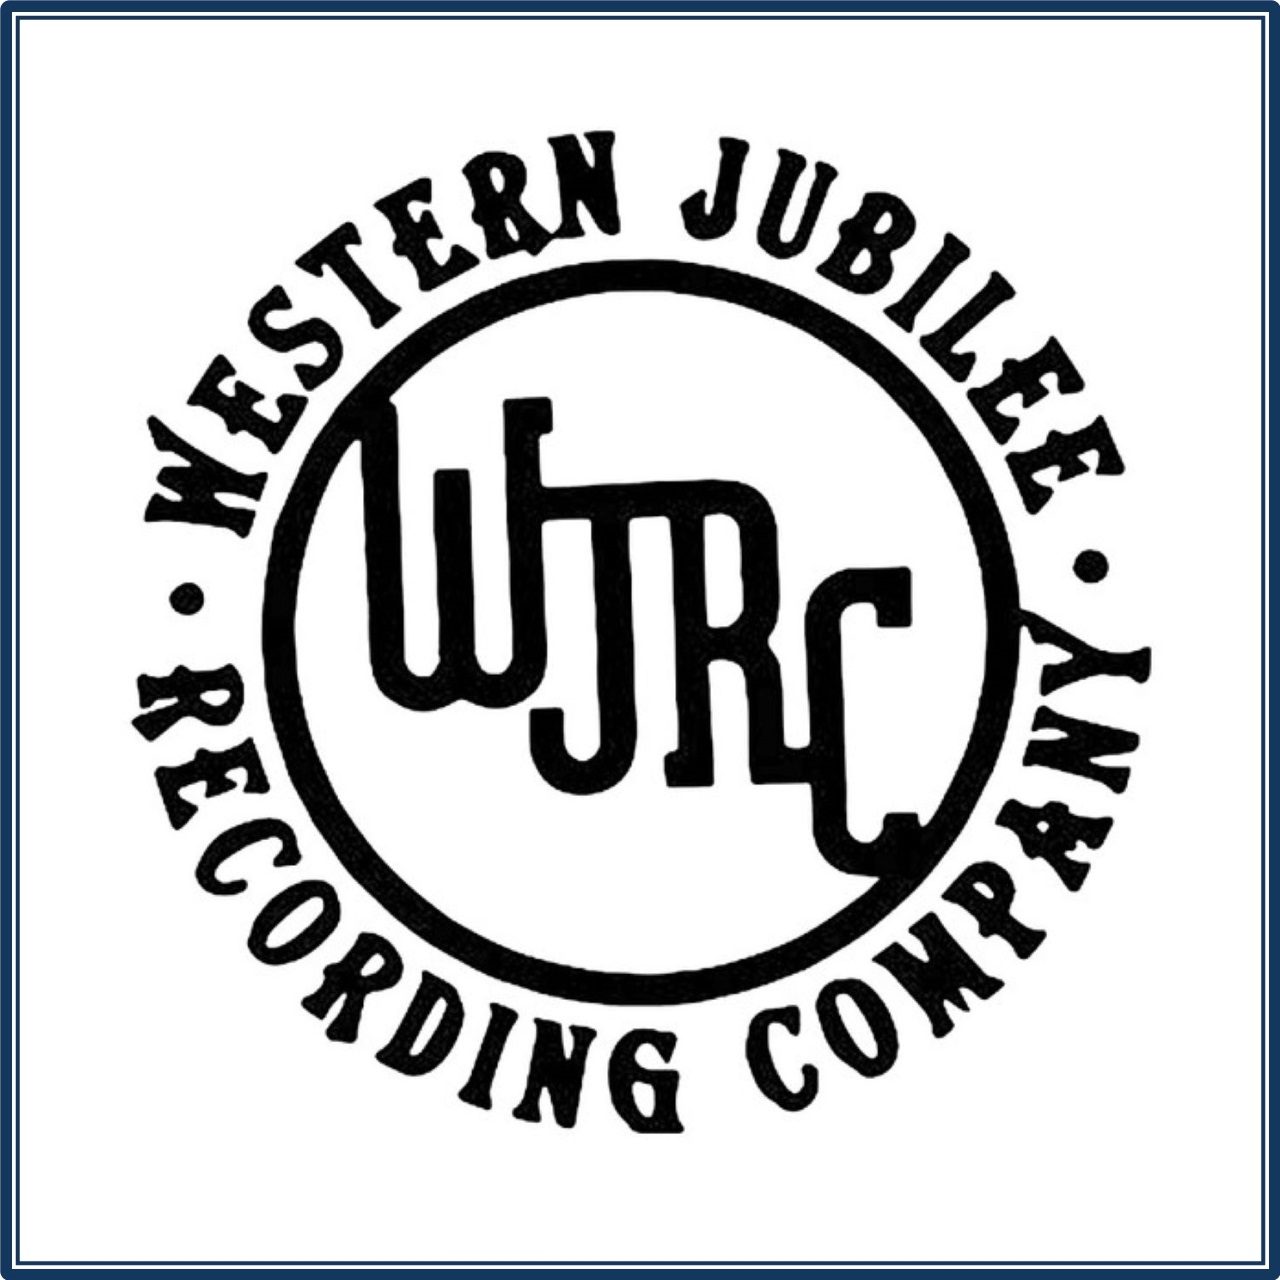 Western Jubilee Recording